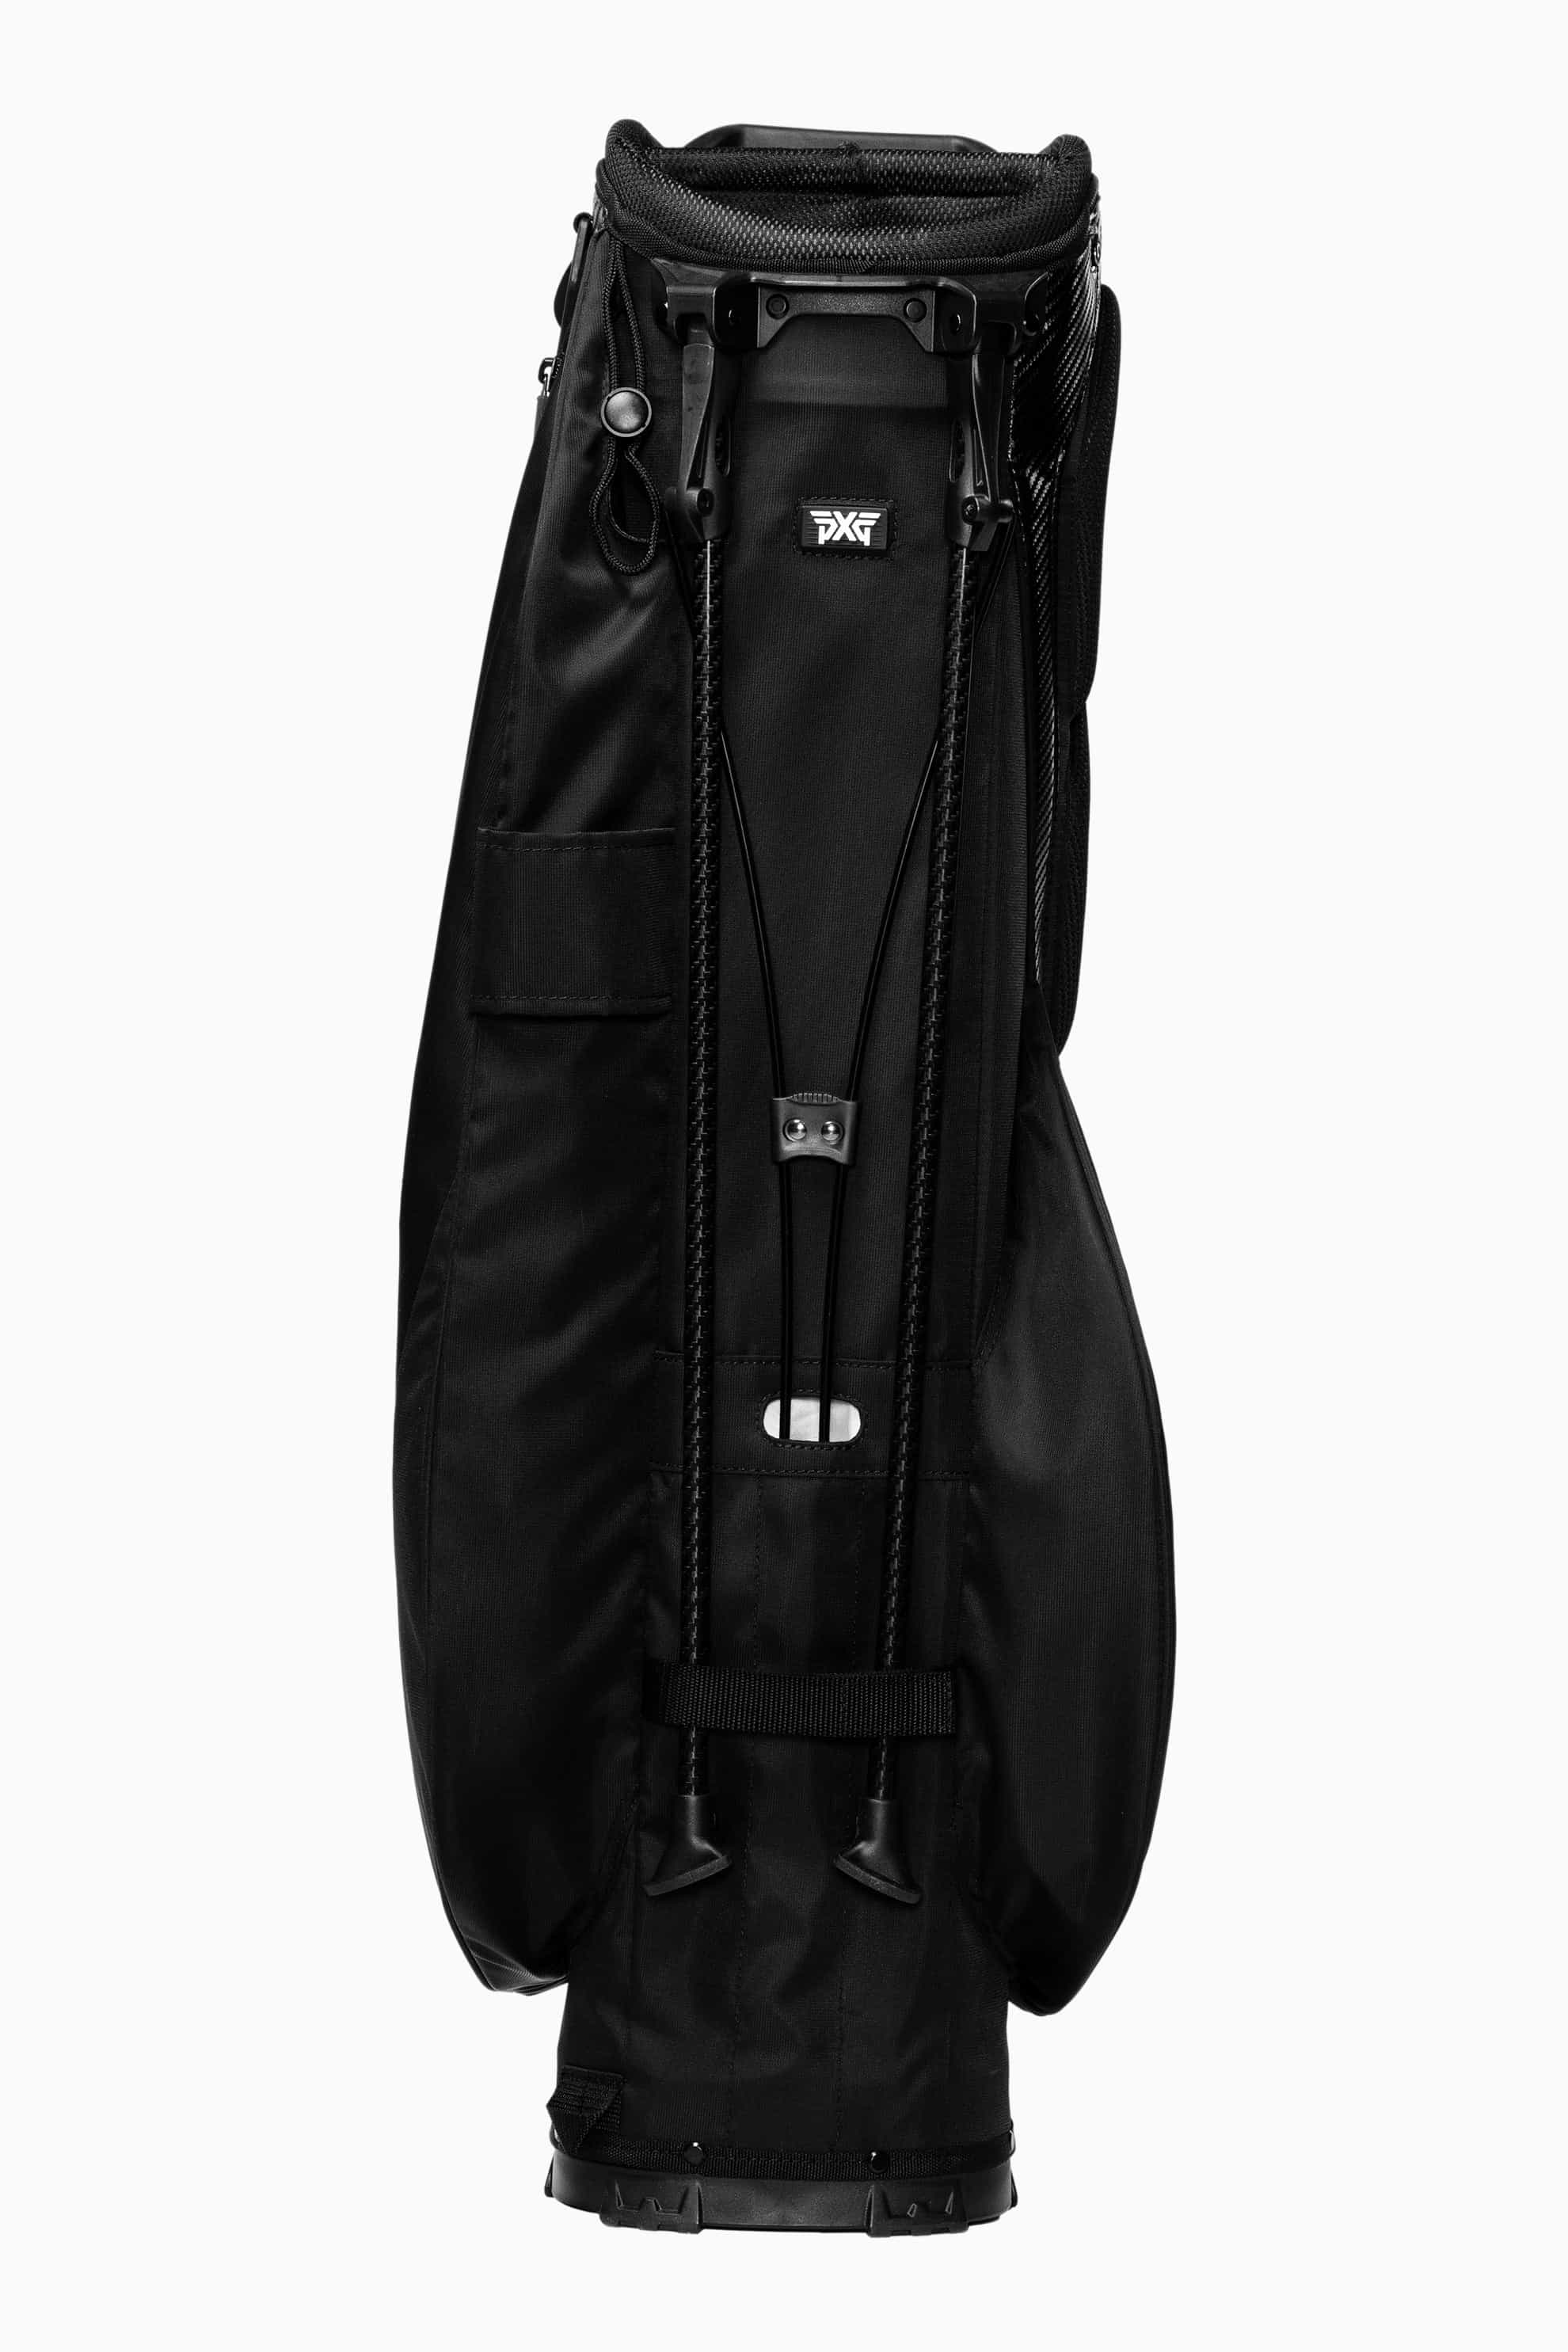 LIghtweight Carry Stand Bag | Golf Bags | Standing, Carry & Cart ...